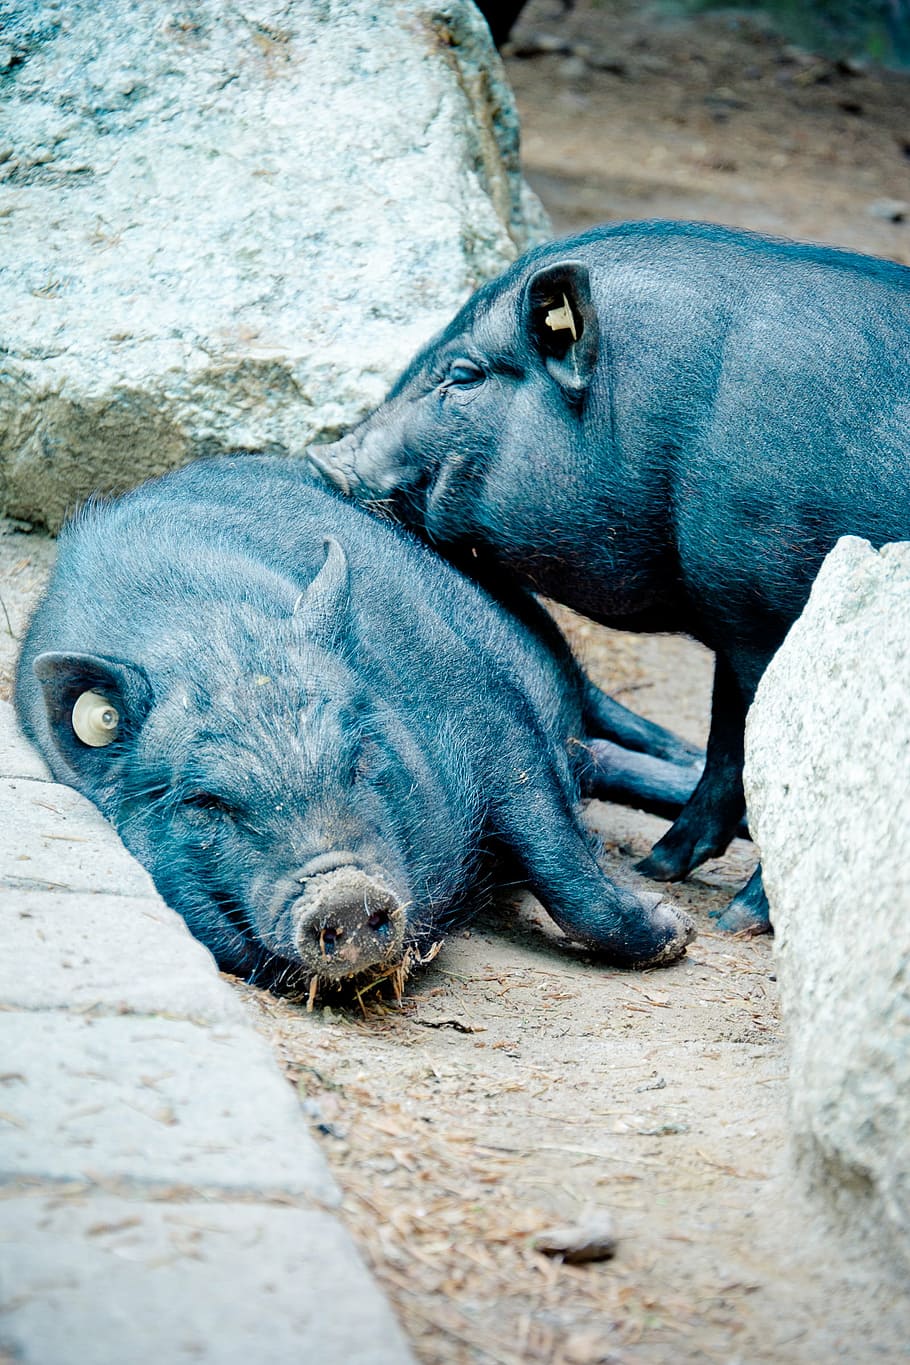 pot bellied pig, vietnamese hängebauchschwein pig, wild translucent, eurasisch, pig, sow, concerns, snuggle, livestock, nature